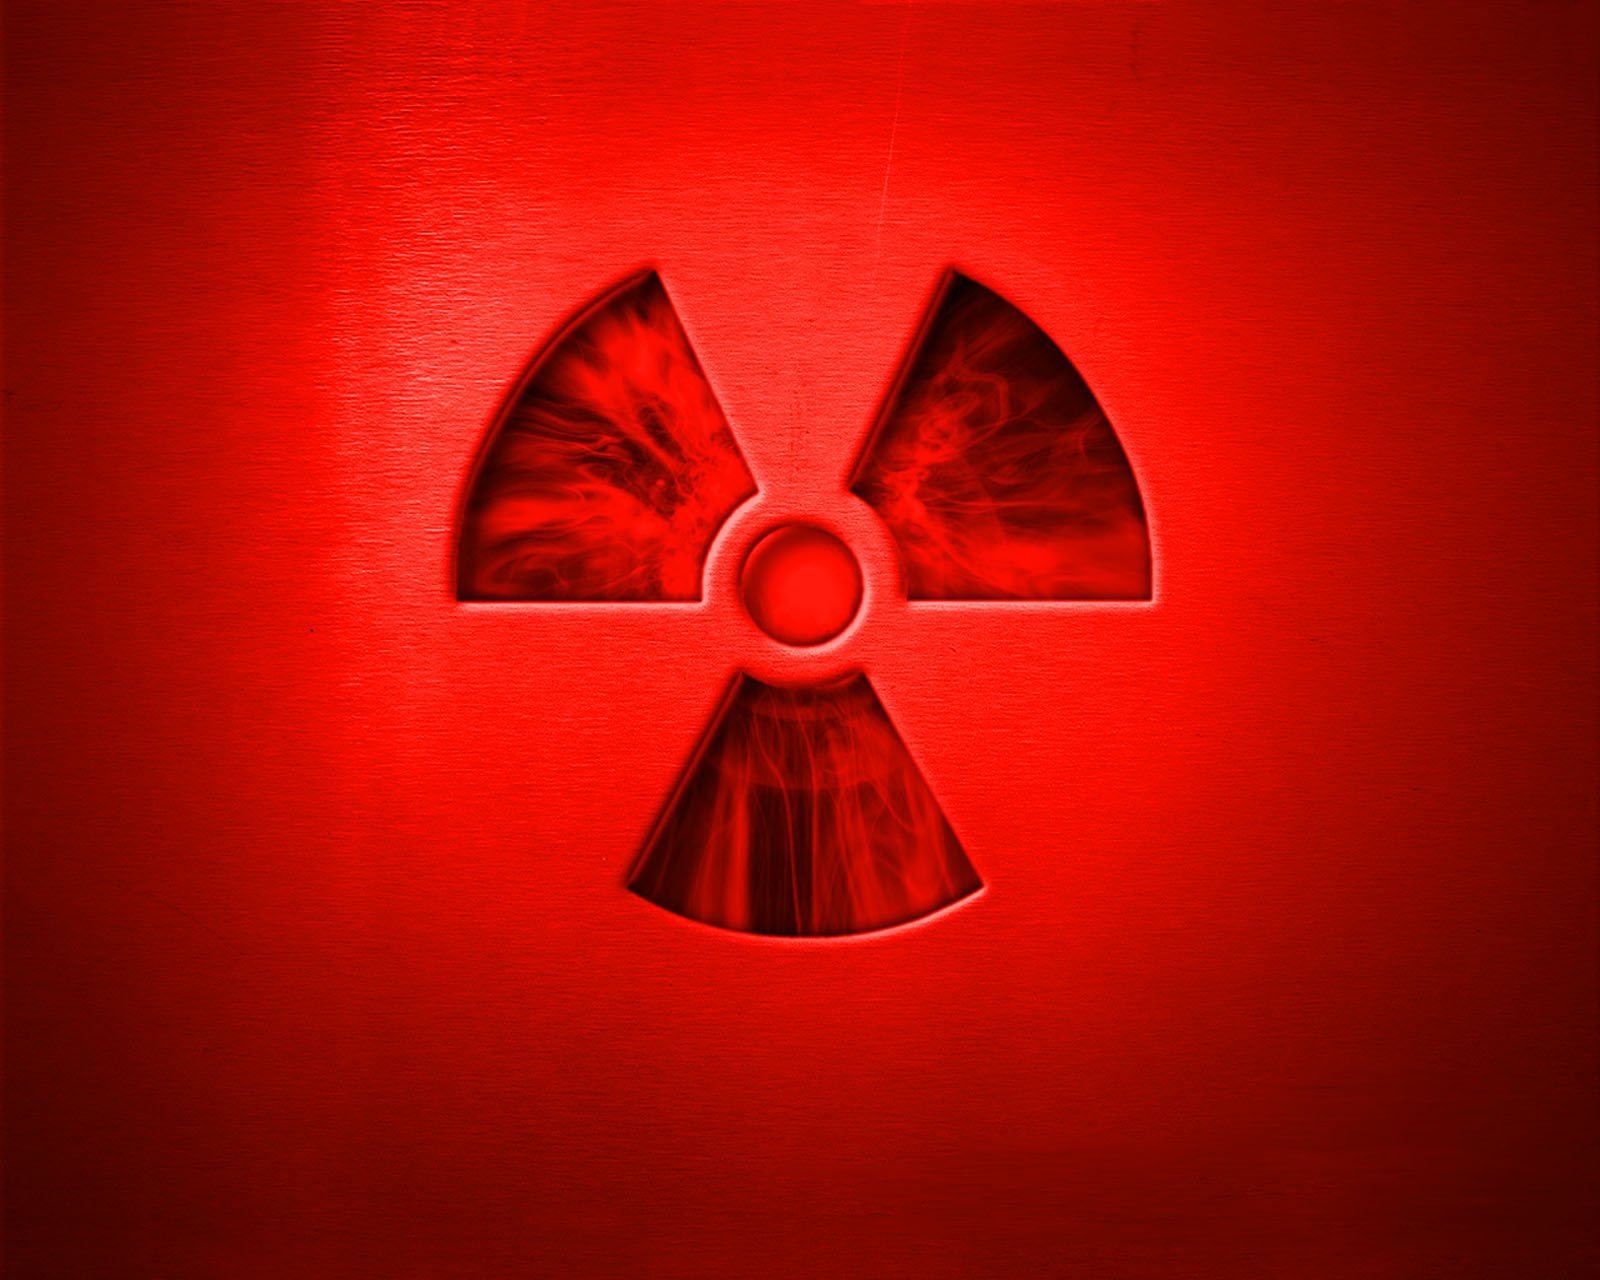 [42+] Radiation Symbol Wallpaper - WallpaperSafari